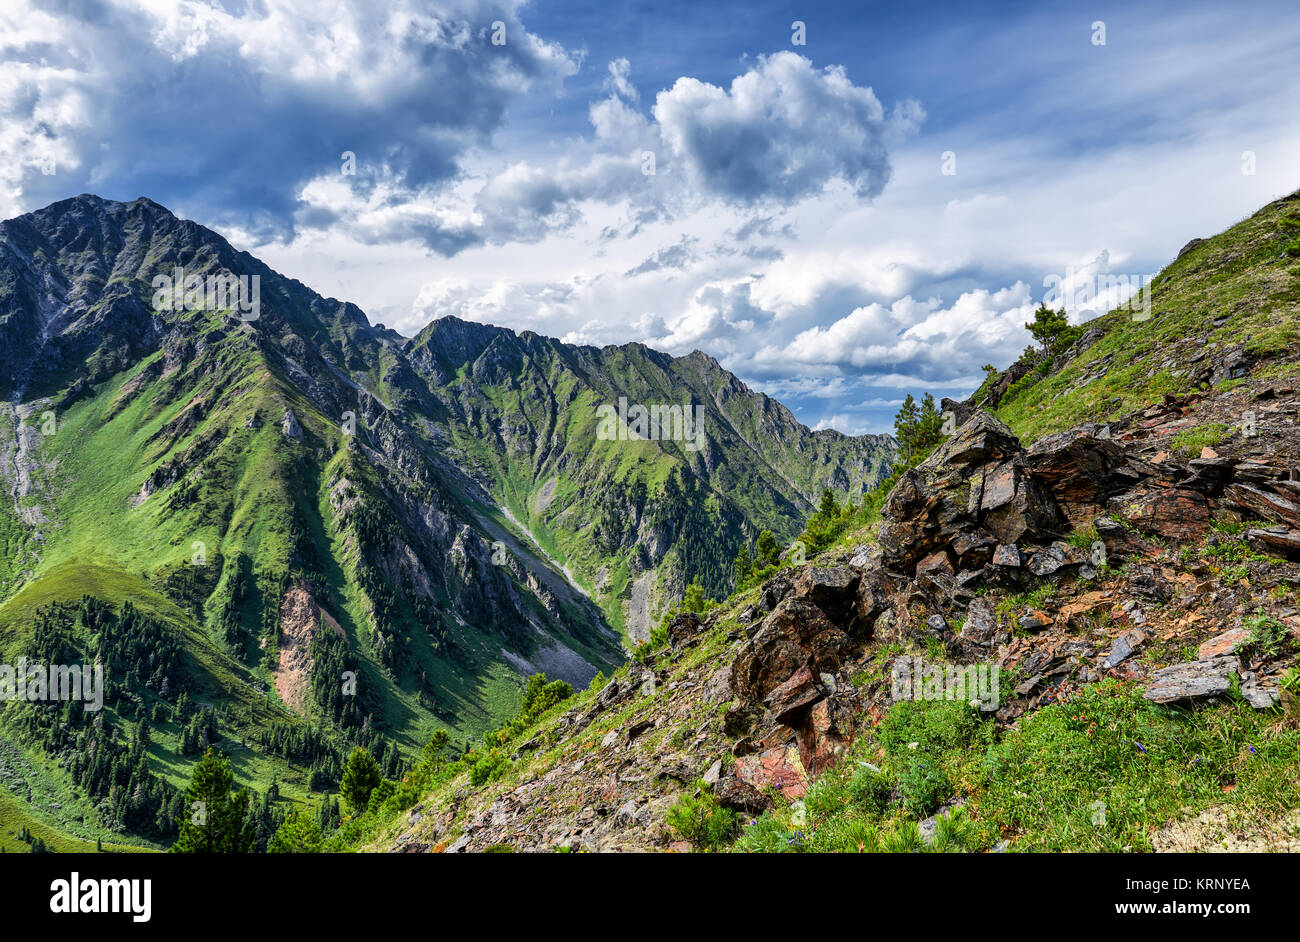 Hautes terres de Sibérie en juillet. Sayan de l'Est. La Russie Banque D'Images